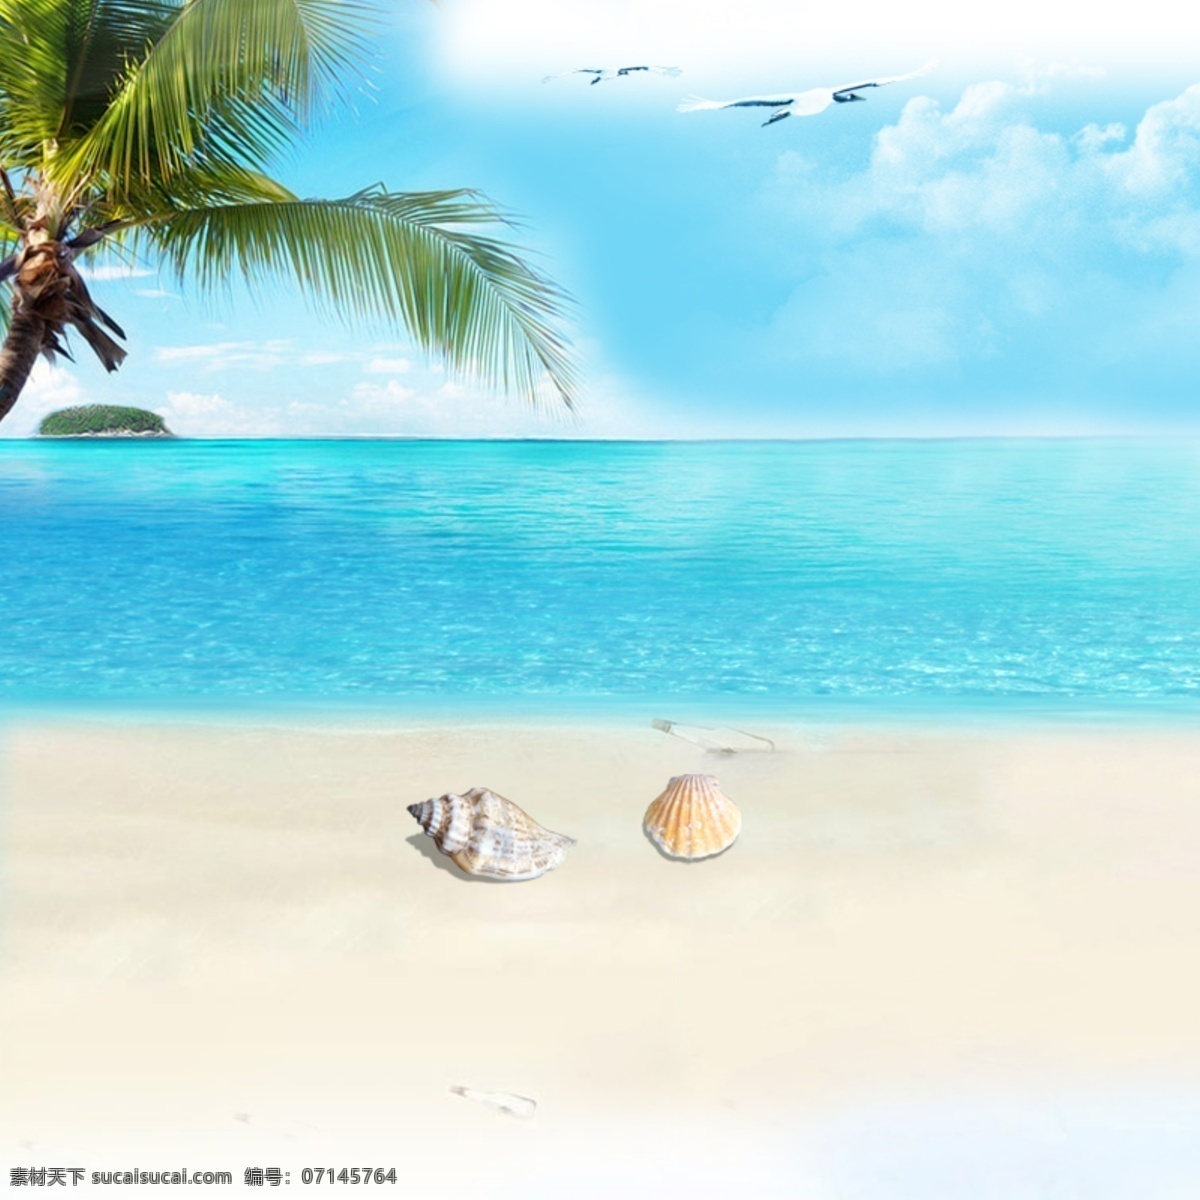 夏日 清新 沙滩 贝壳 椰树 背景 白色